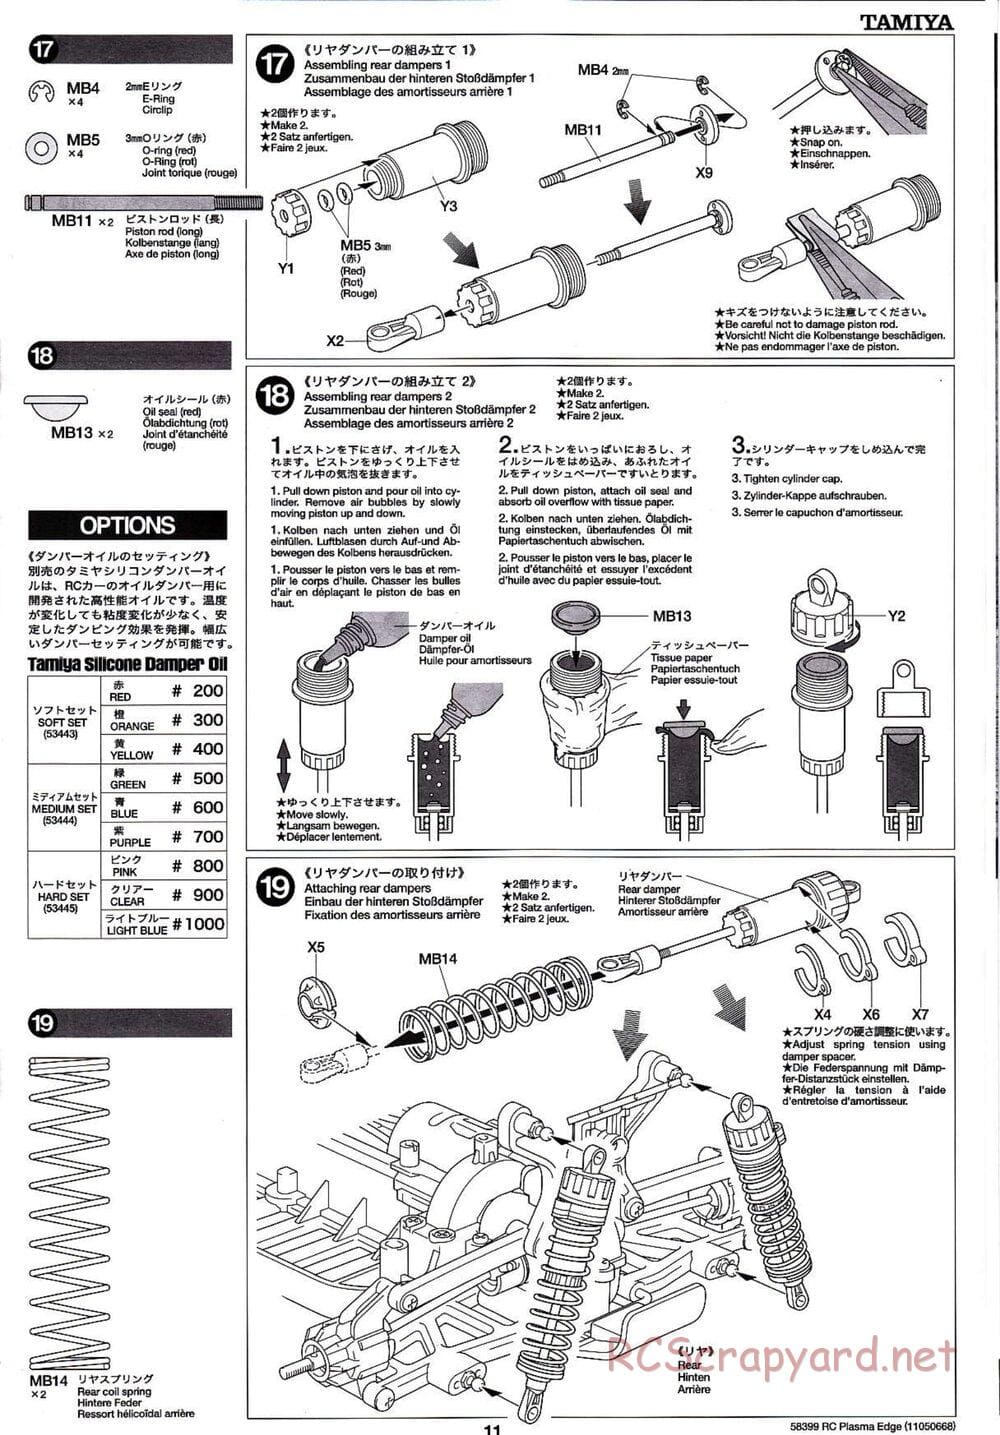 Tamiya - Plasma Edge Chassis - Manual - Page 11